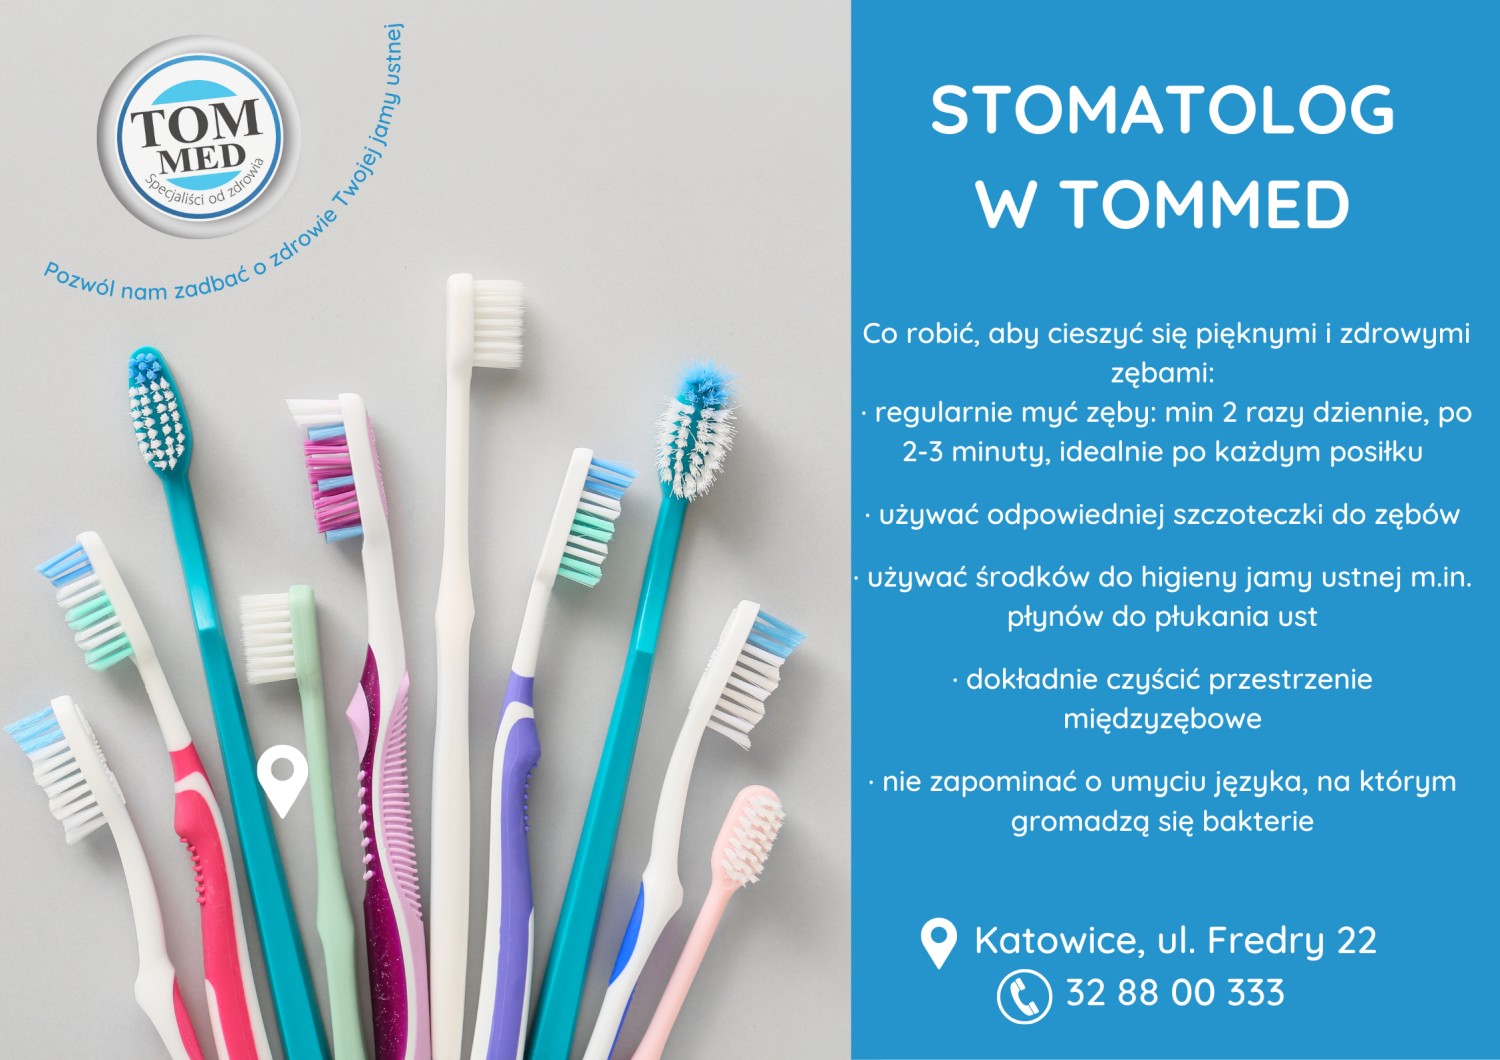 Stomatolog w Tommed - jak dbać o zęby